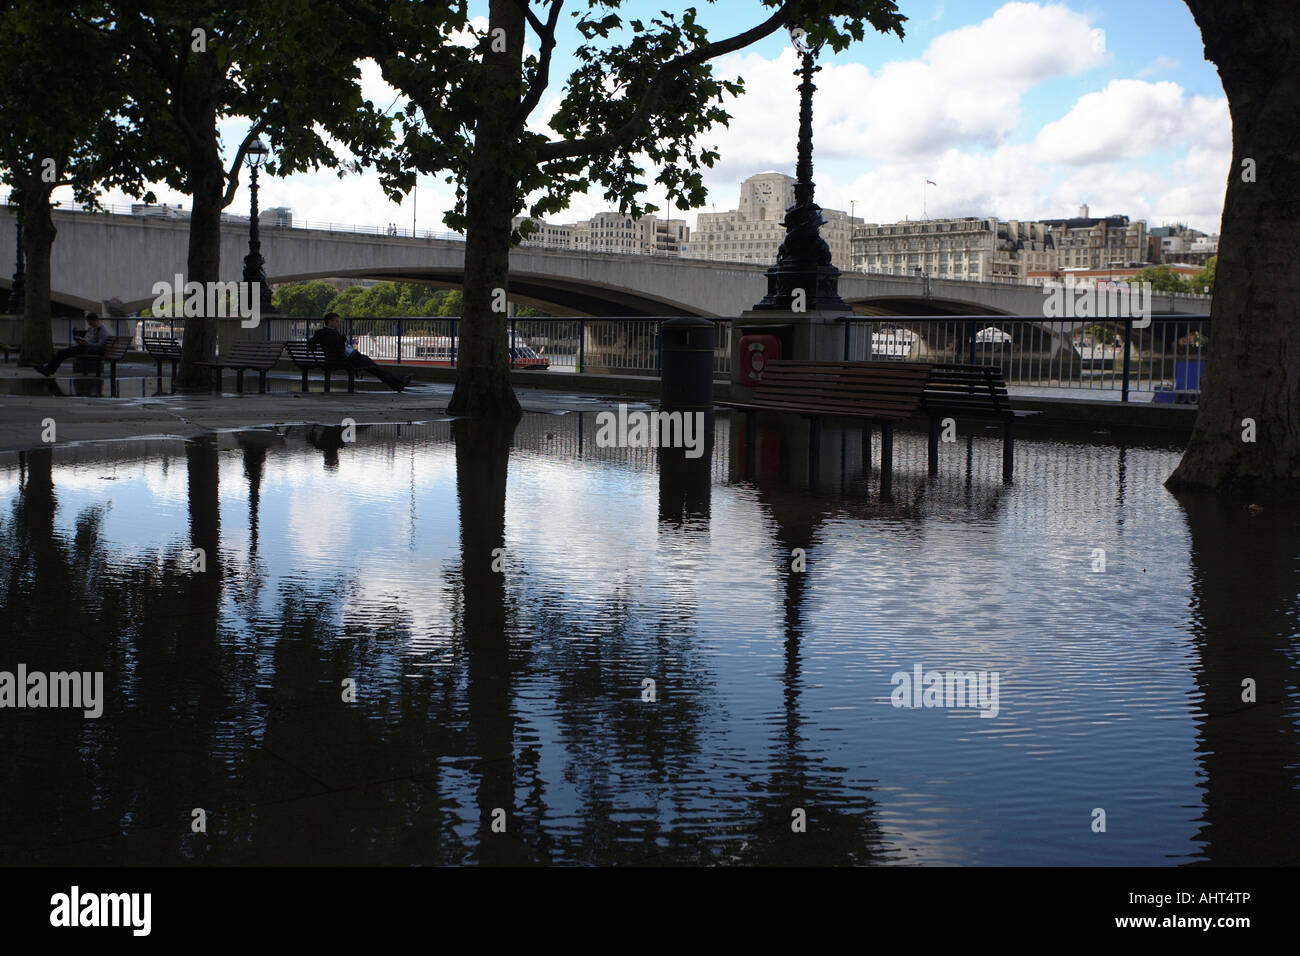 Inondés Rive sud de la Tamise par Waterloo Bridge, London, England, UK Banque D'Images